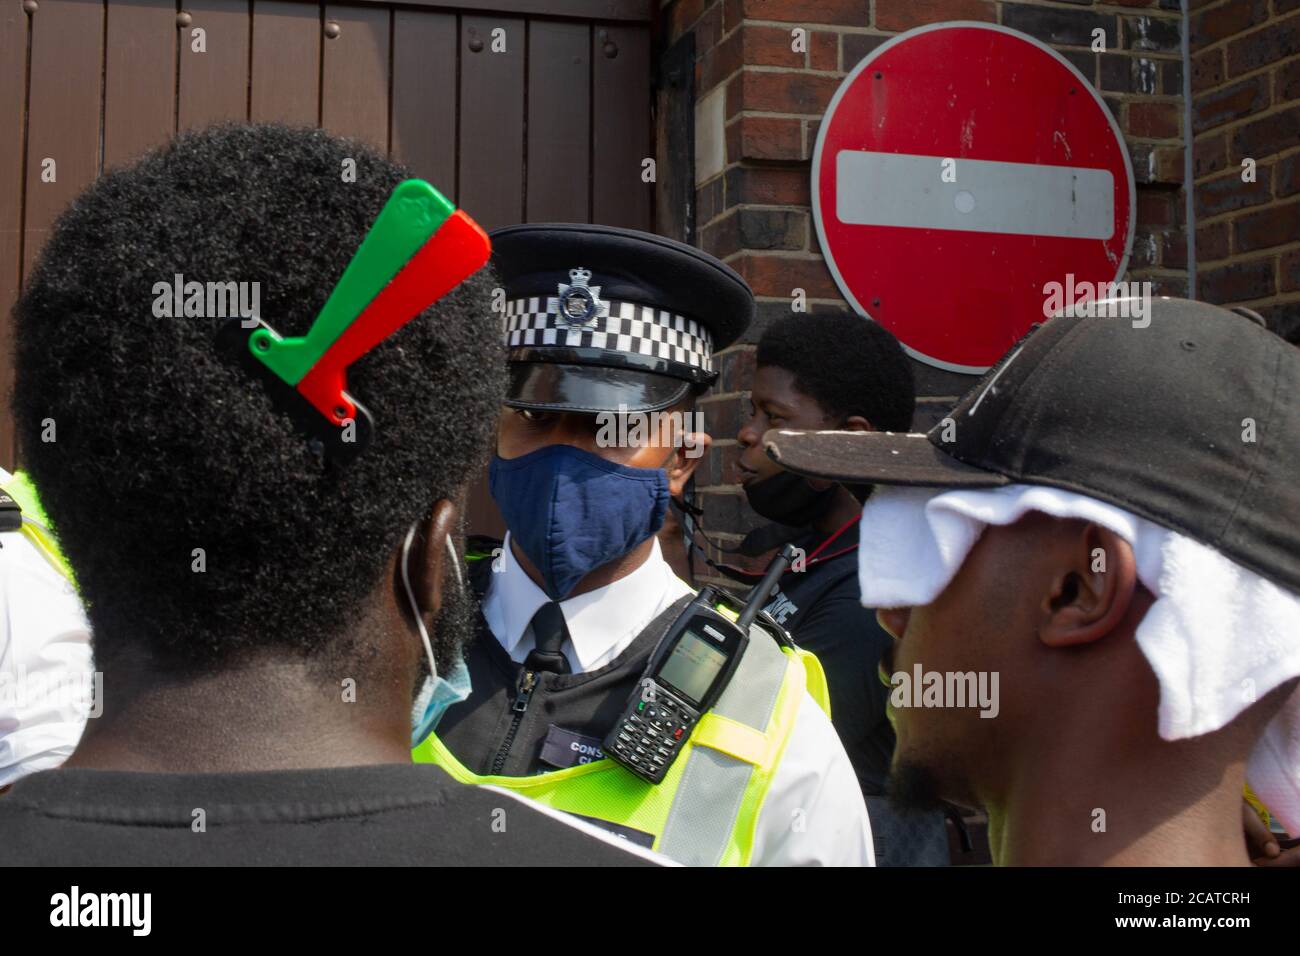 Les manifestants parlent à un policier devant le poste de police de Tottenham pendant la manifestation. Les manifestants appellent le gouvernement à éliminer l'article 60 (arrêt et recherche sans suspicion). Banque D'Images